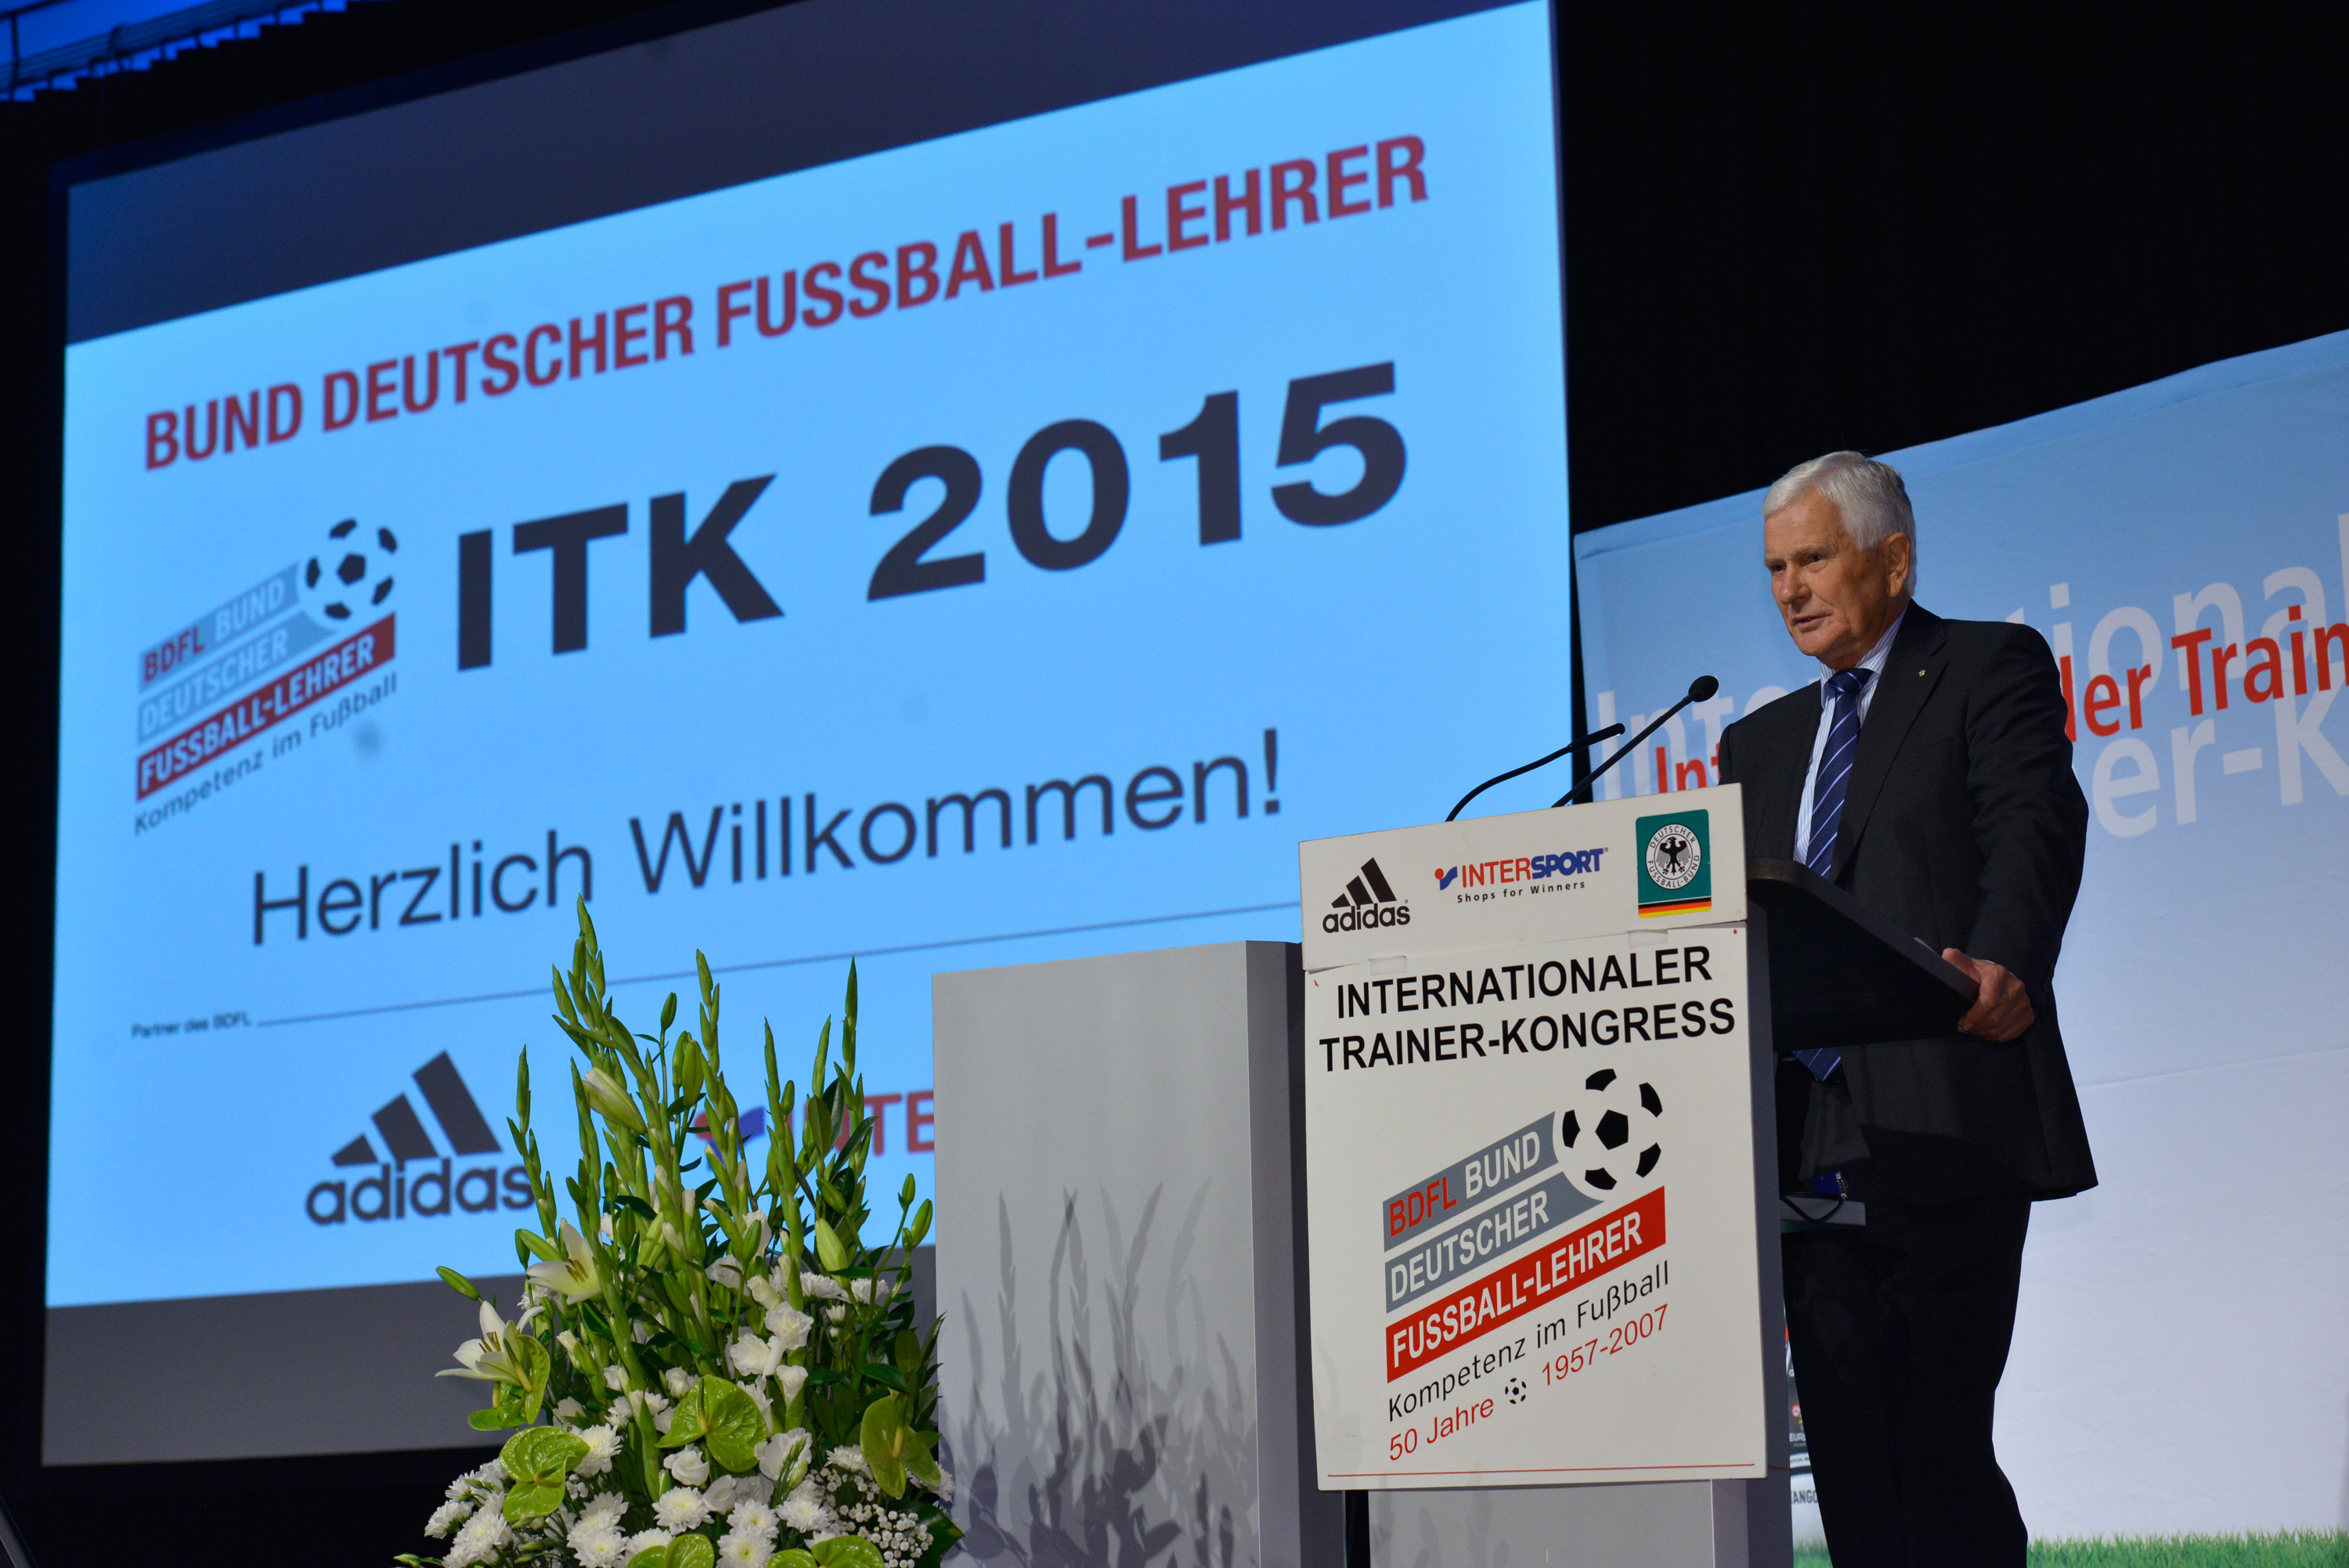 ITK 2015: Eröffnung des Trainer-Kongresses in Wolfsburg